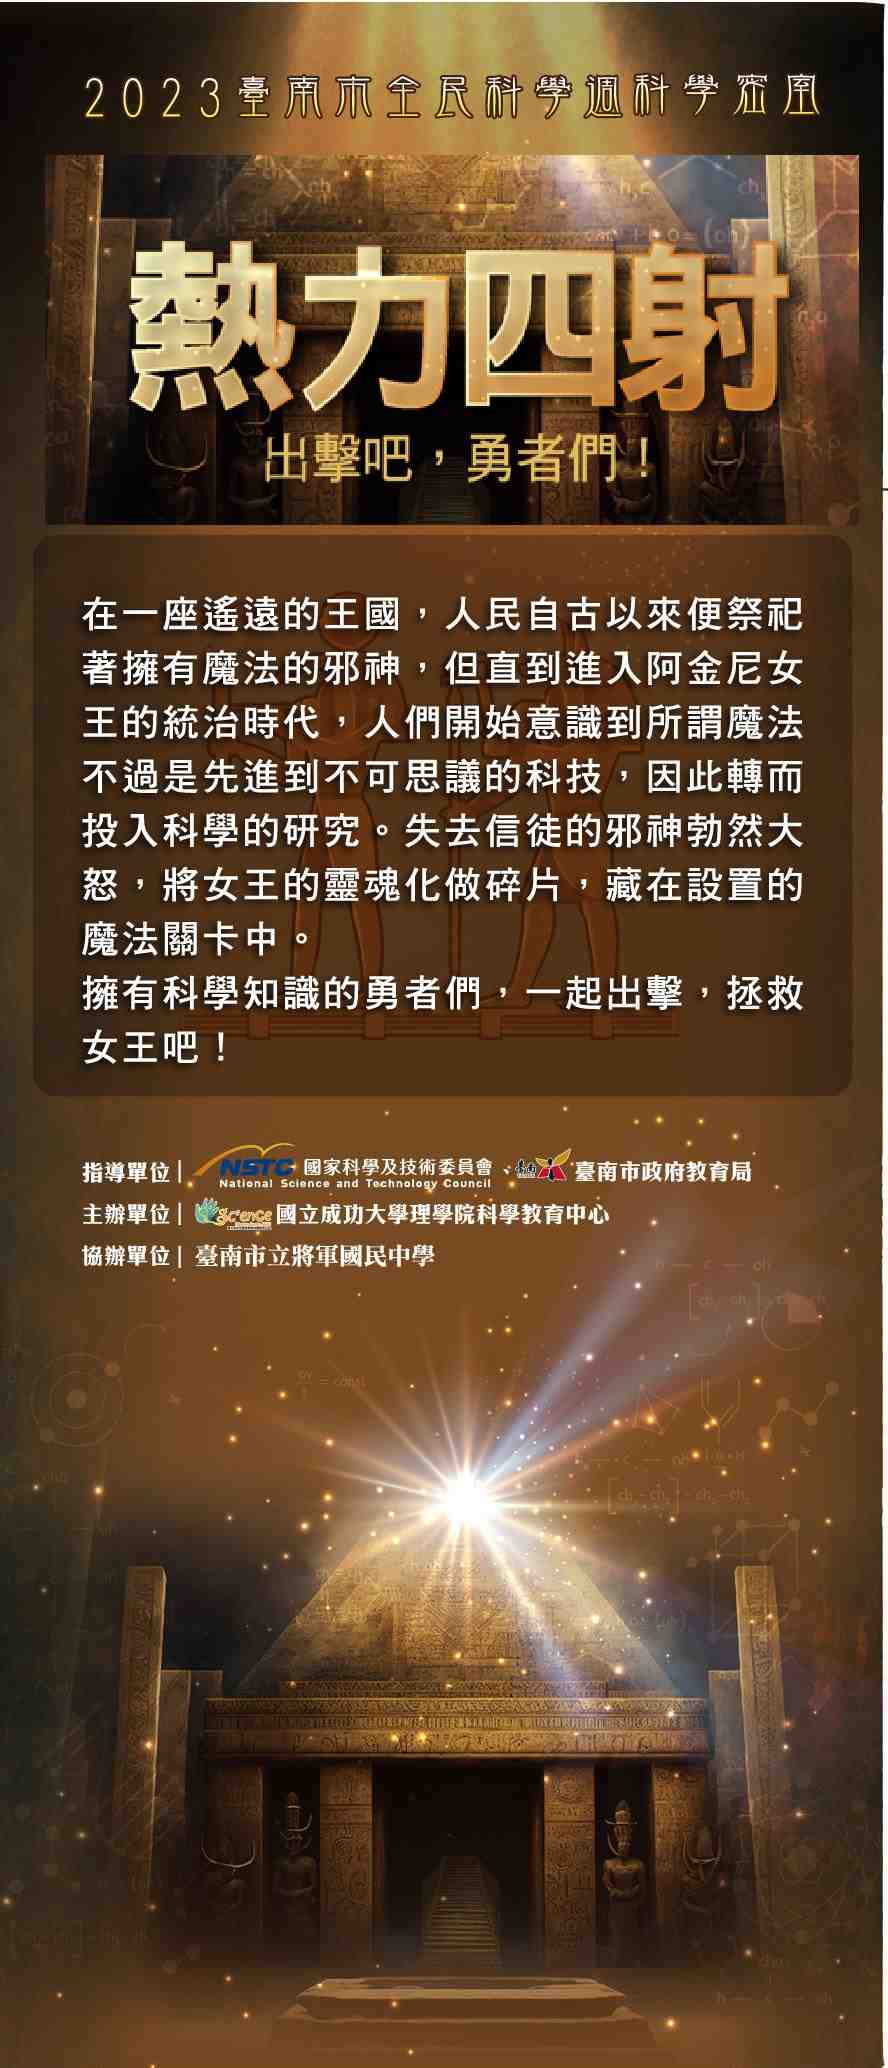 2023年台南市全民科學週科學密室開幕式宣傳用圖片/海報